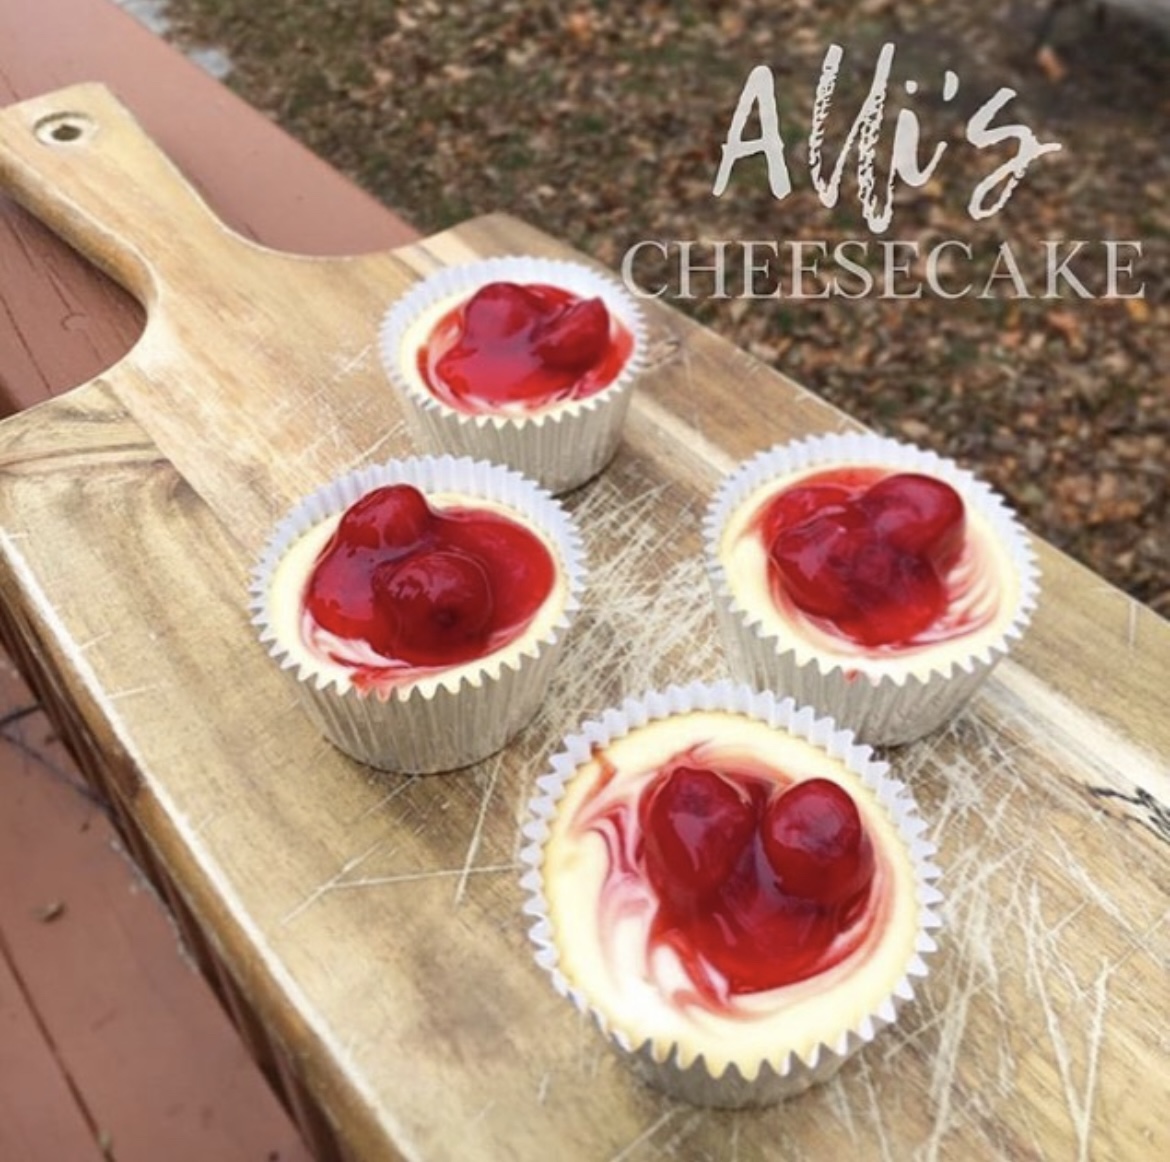 Alli's Cheesecake